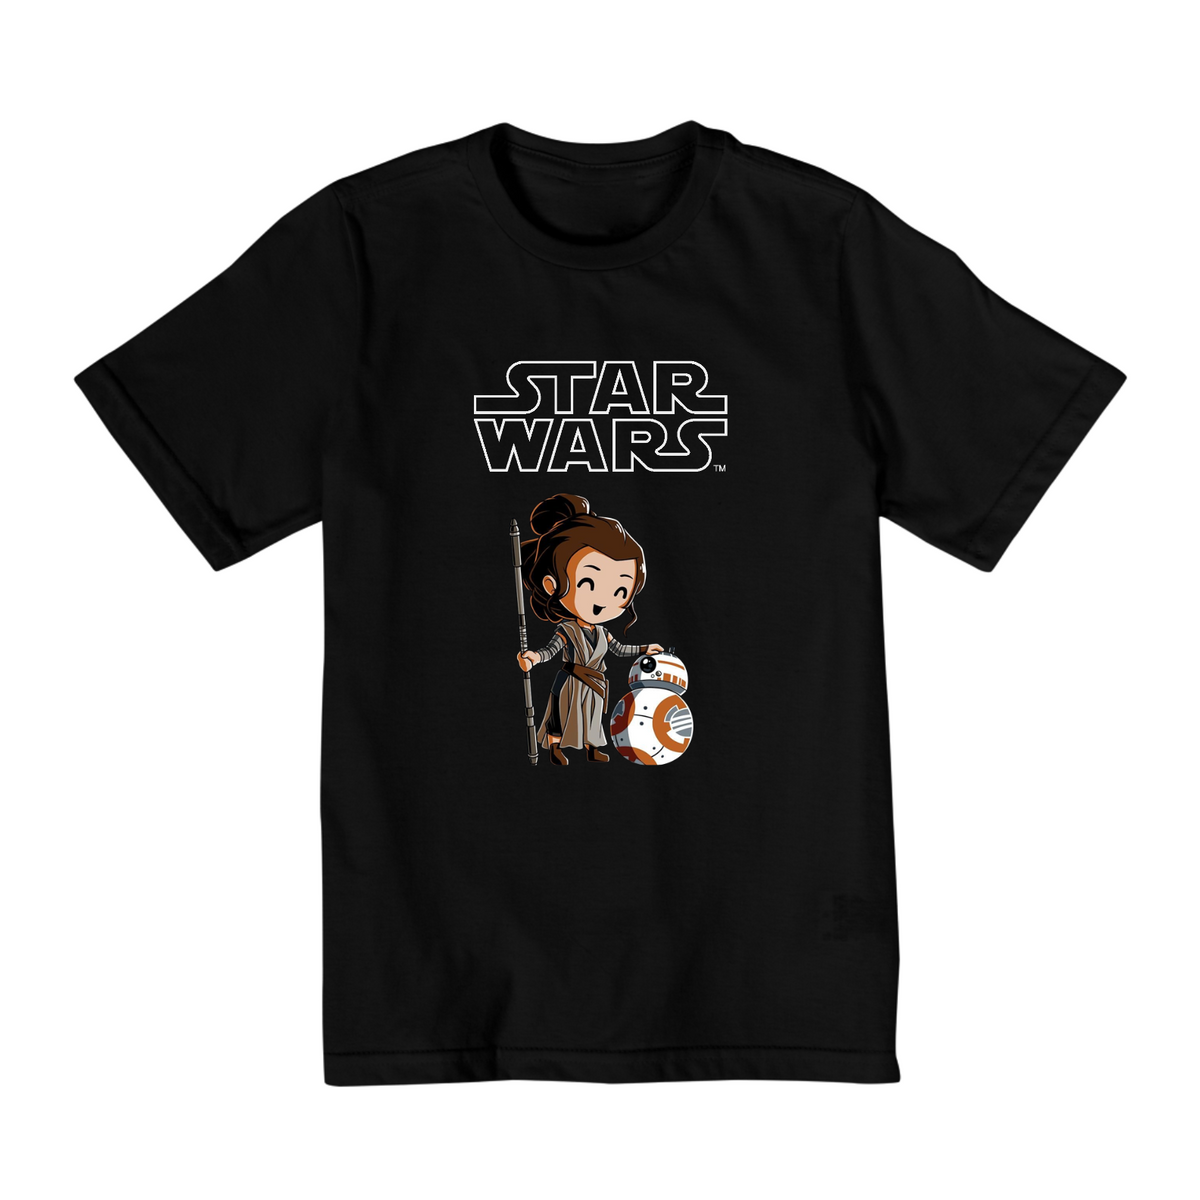 Nome do produto: Coleção Star Wars - Camiseta infantil 02 a 08 anos - Droide e